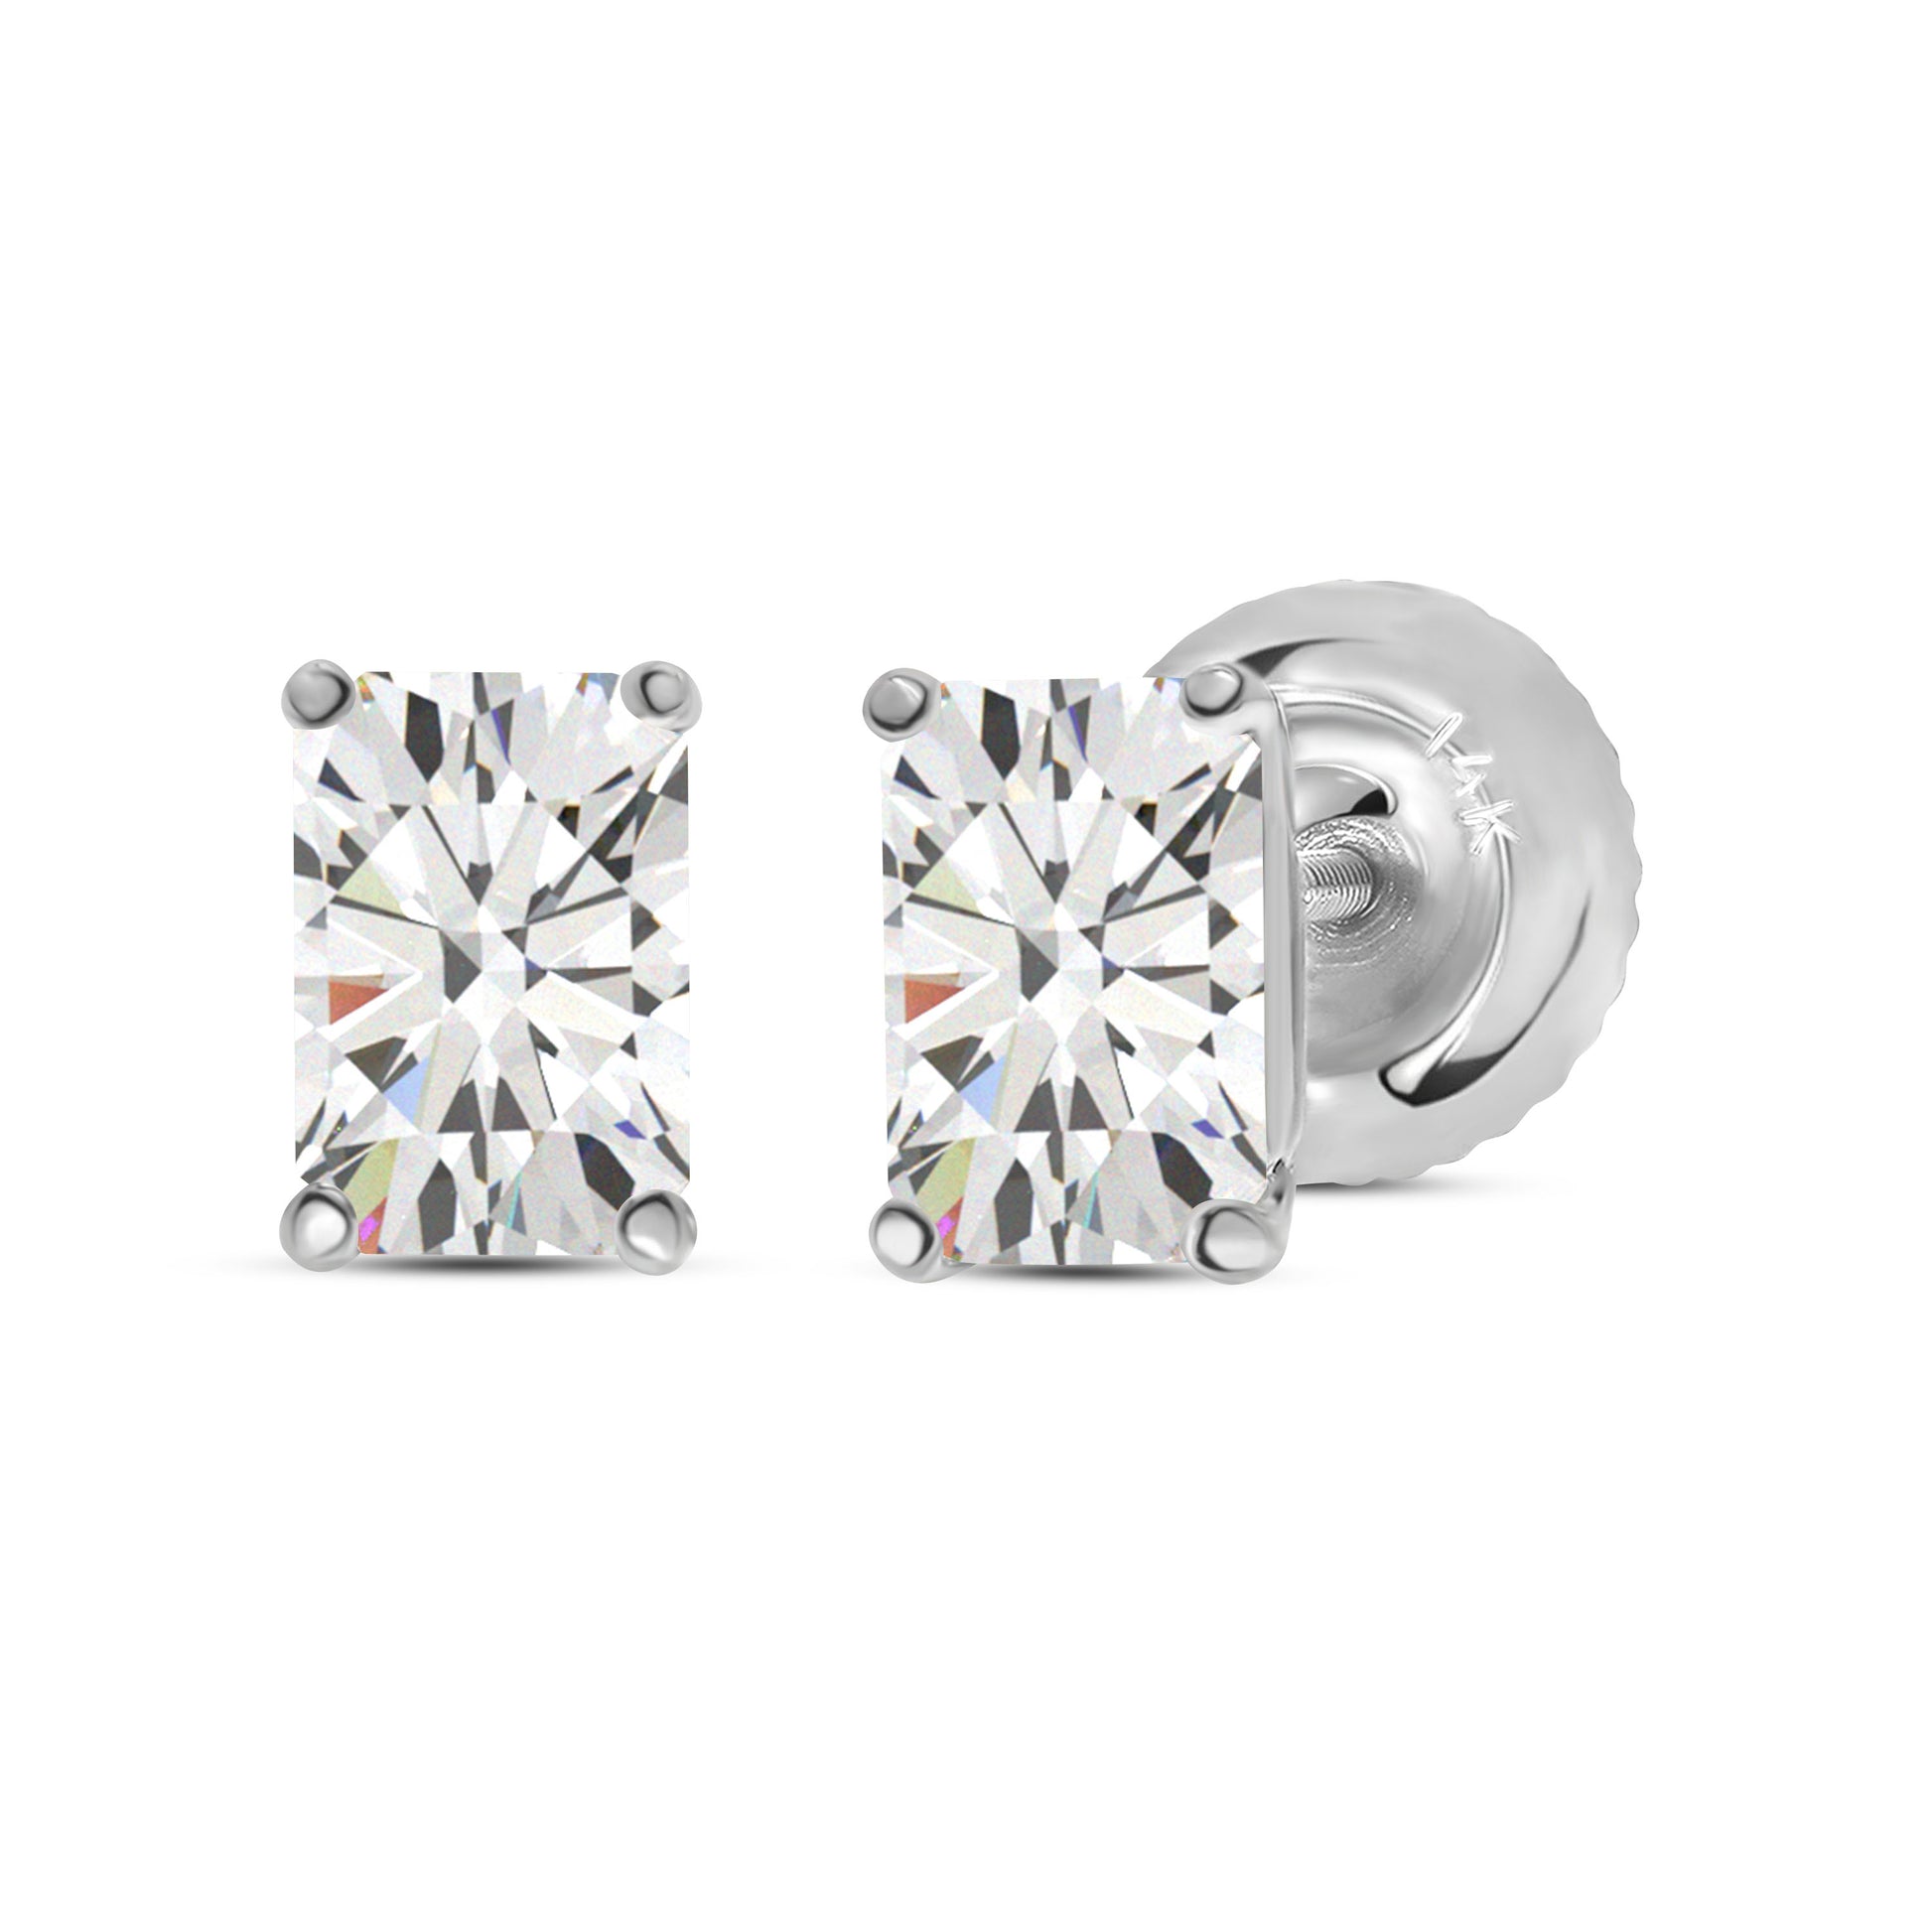 Diamond Stud Earrings. Tested 585 (14K) White Gold, Screw Backs